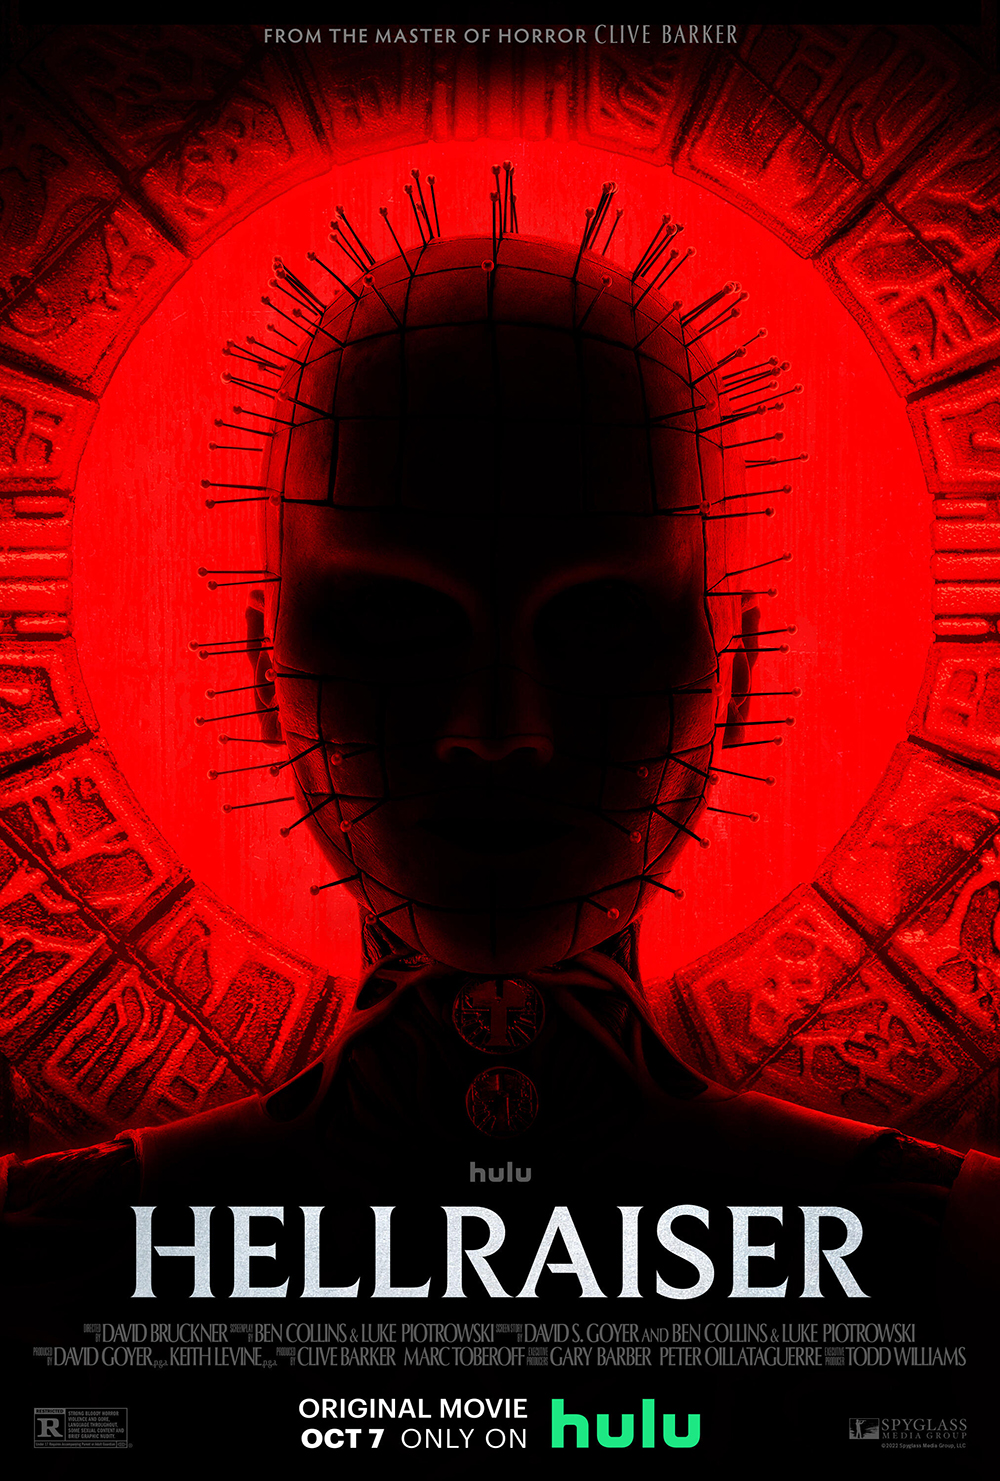 Hellraiser on Hulu - Premieres October 7th